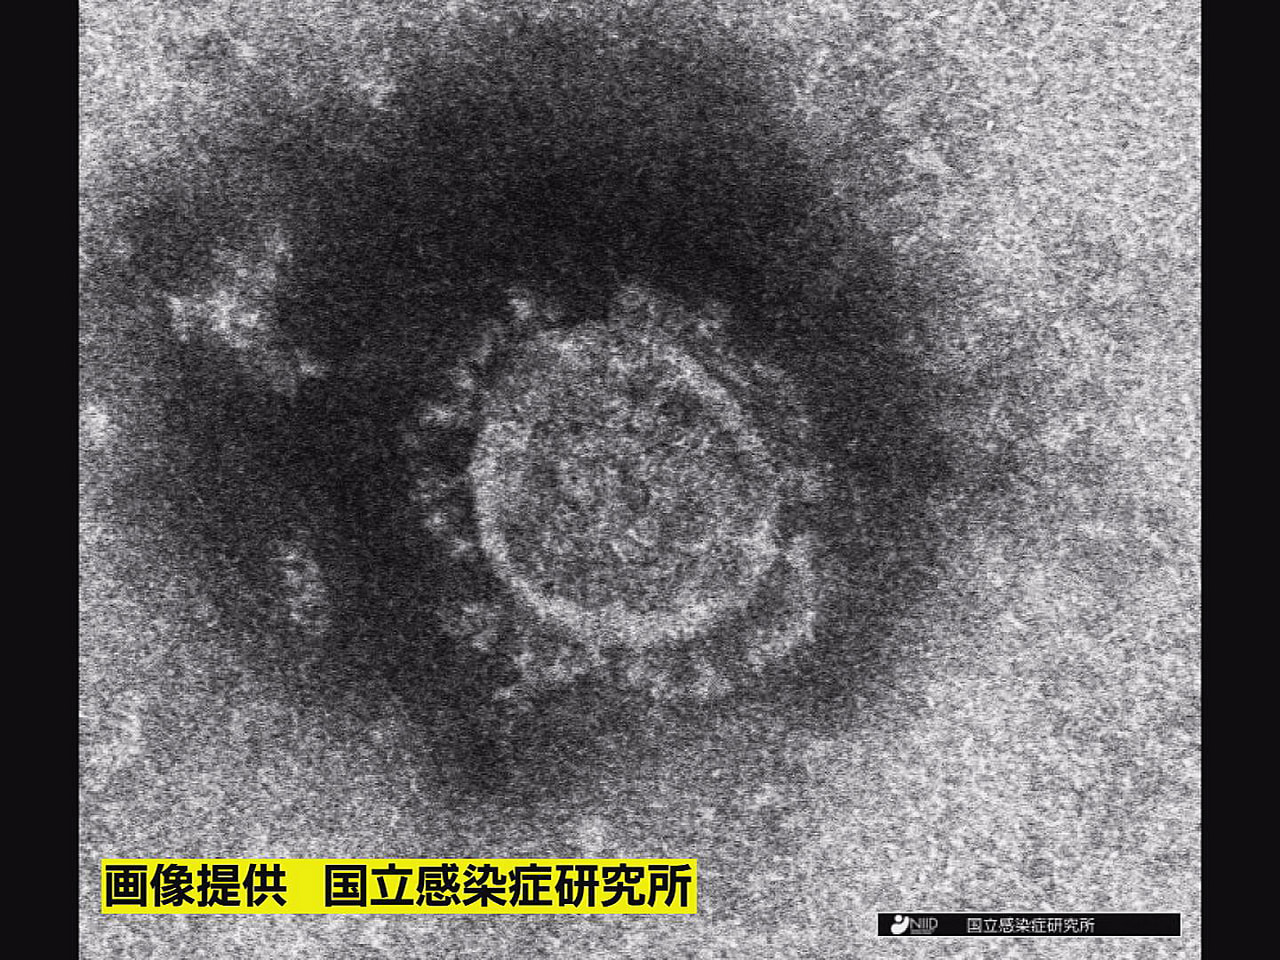 岐阜県は１９日、新型コロナウイルスの新規感染者が６７２人確認されたと発表しました...